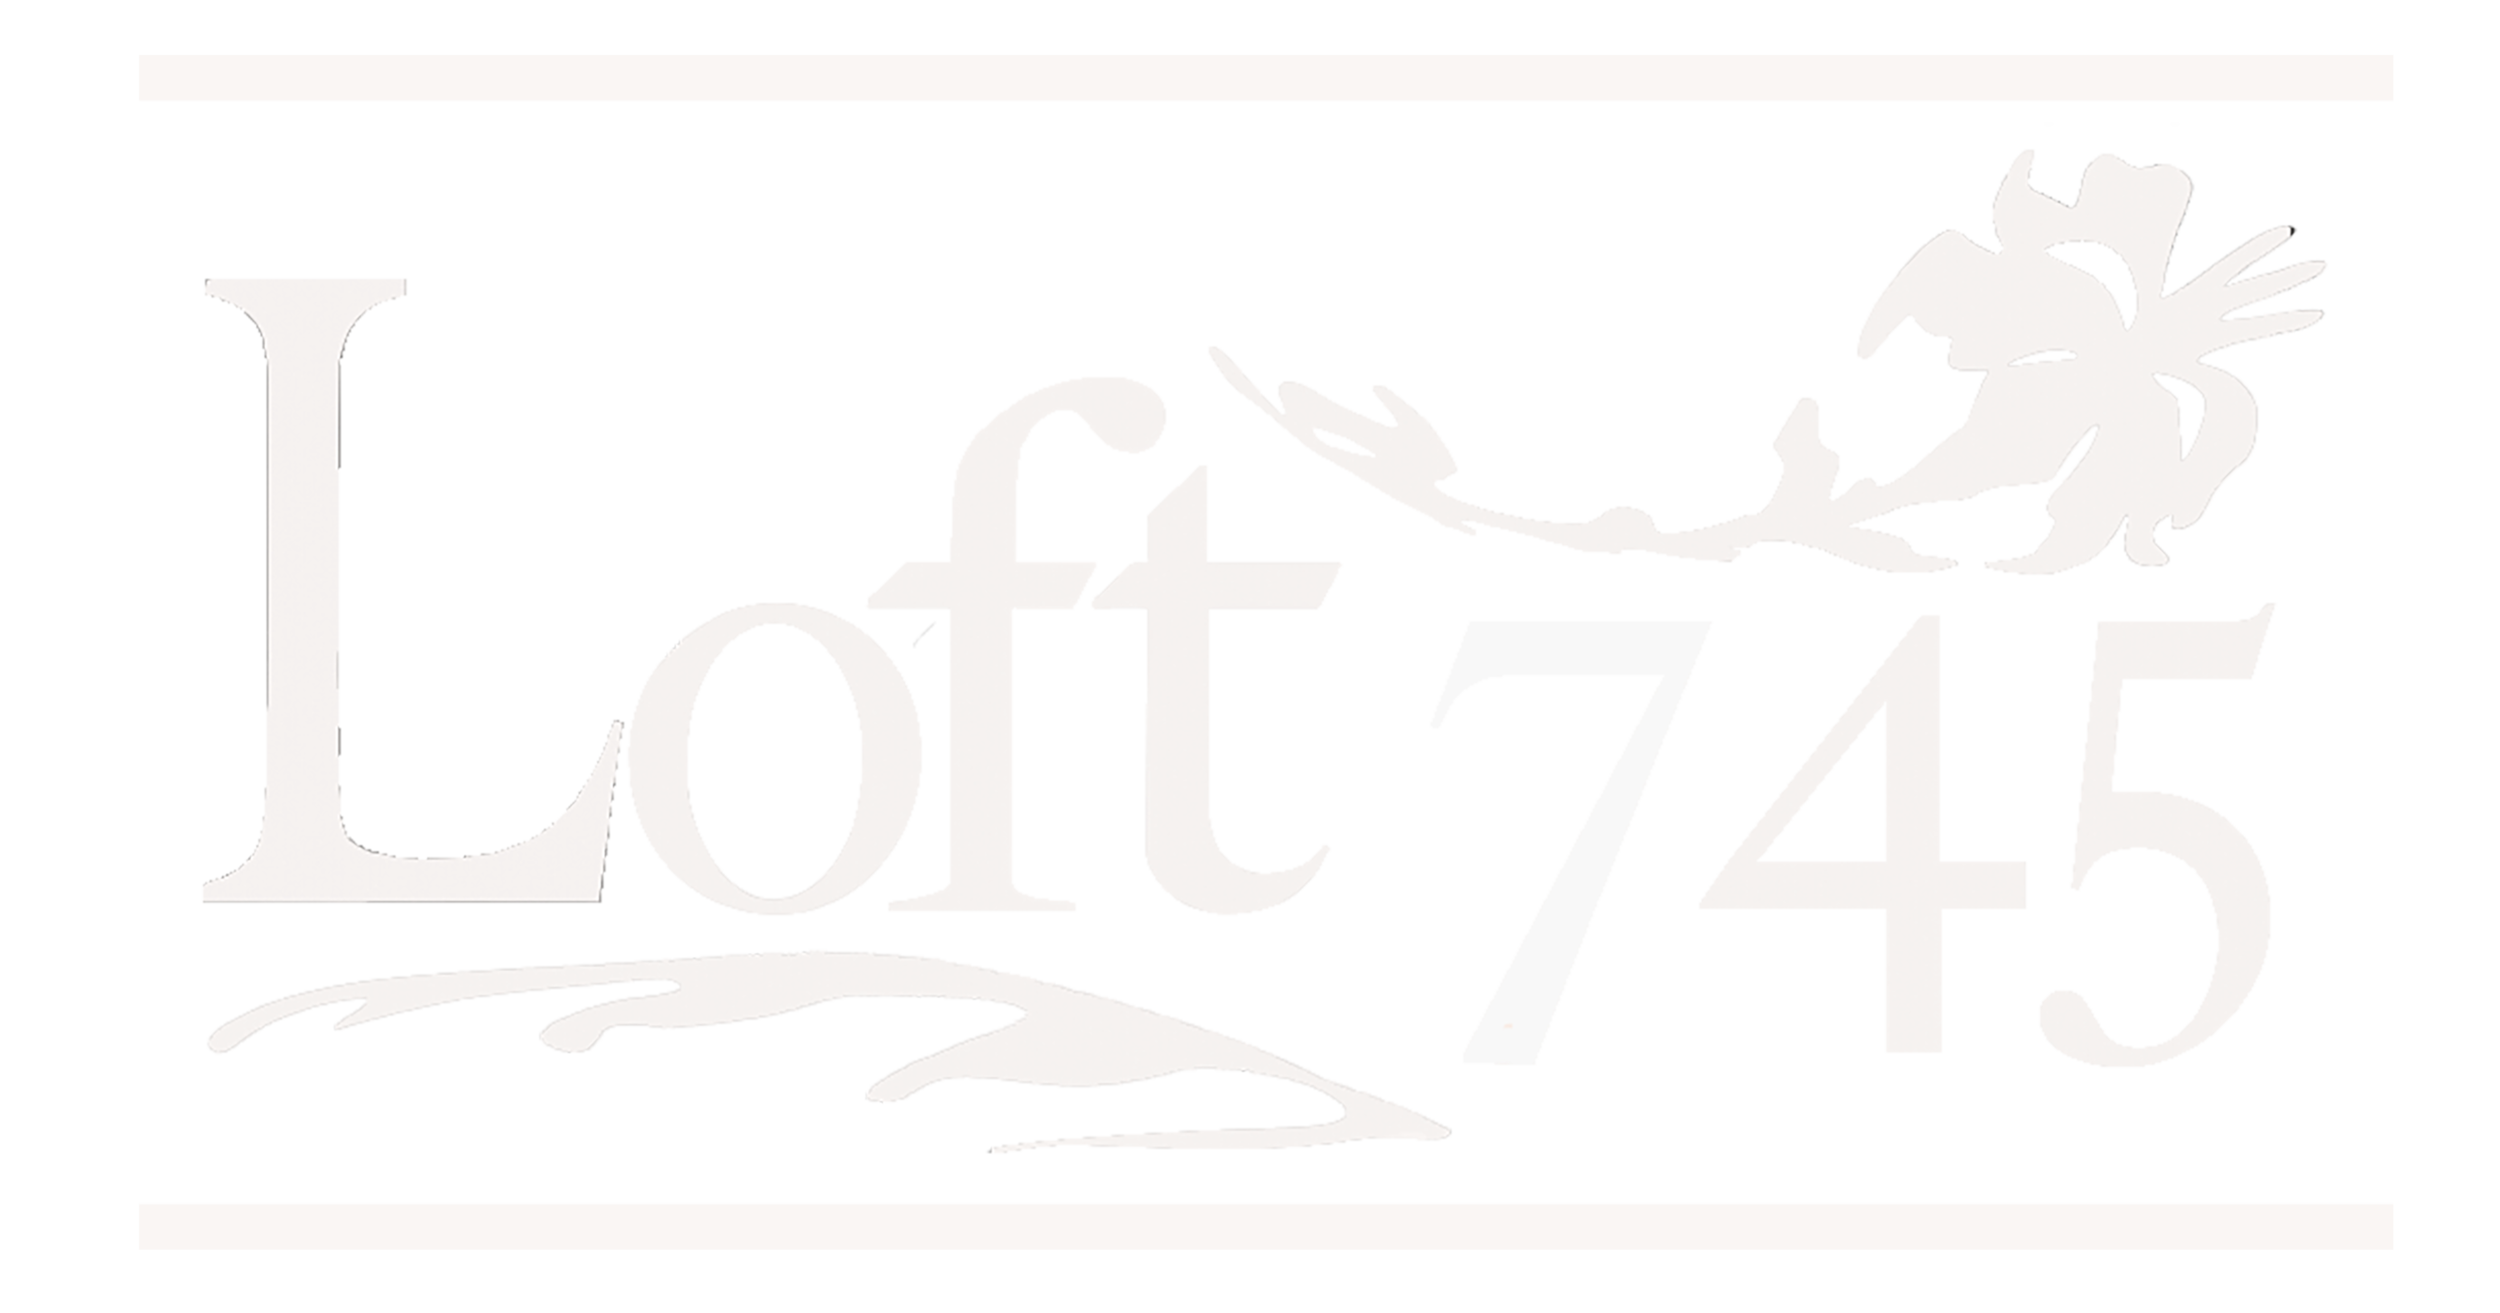 Loft 745